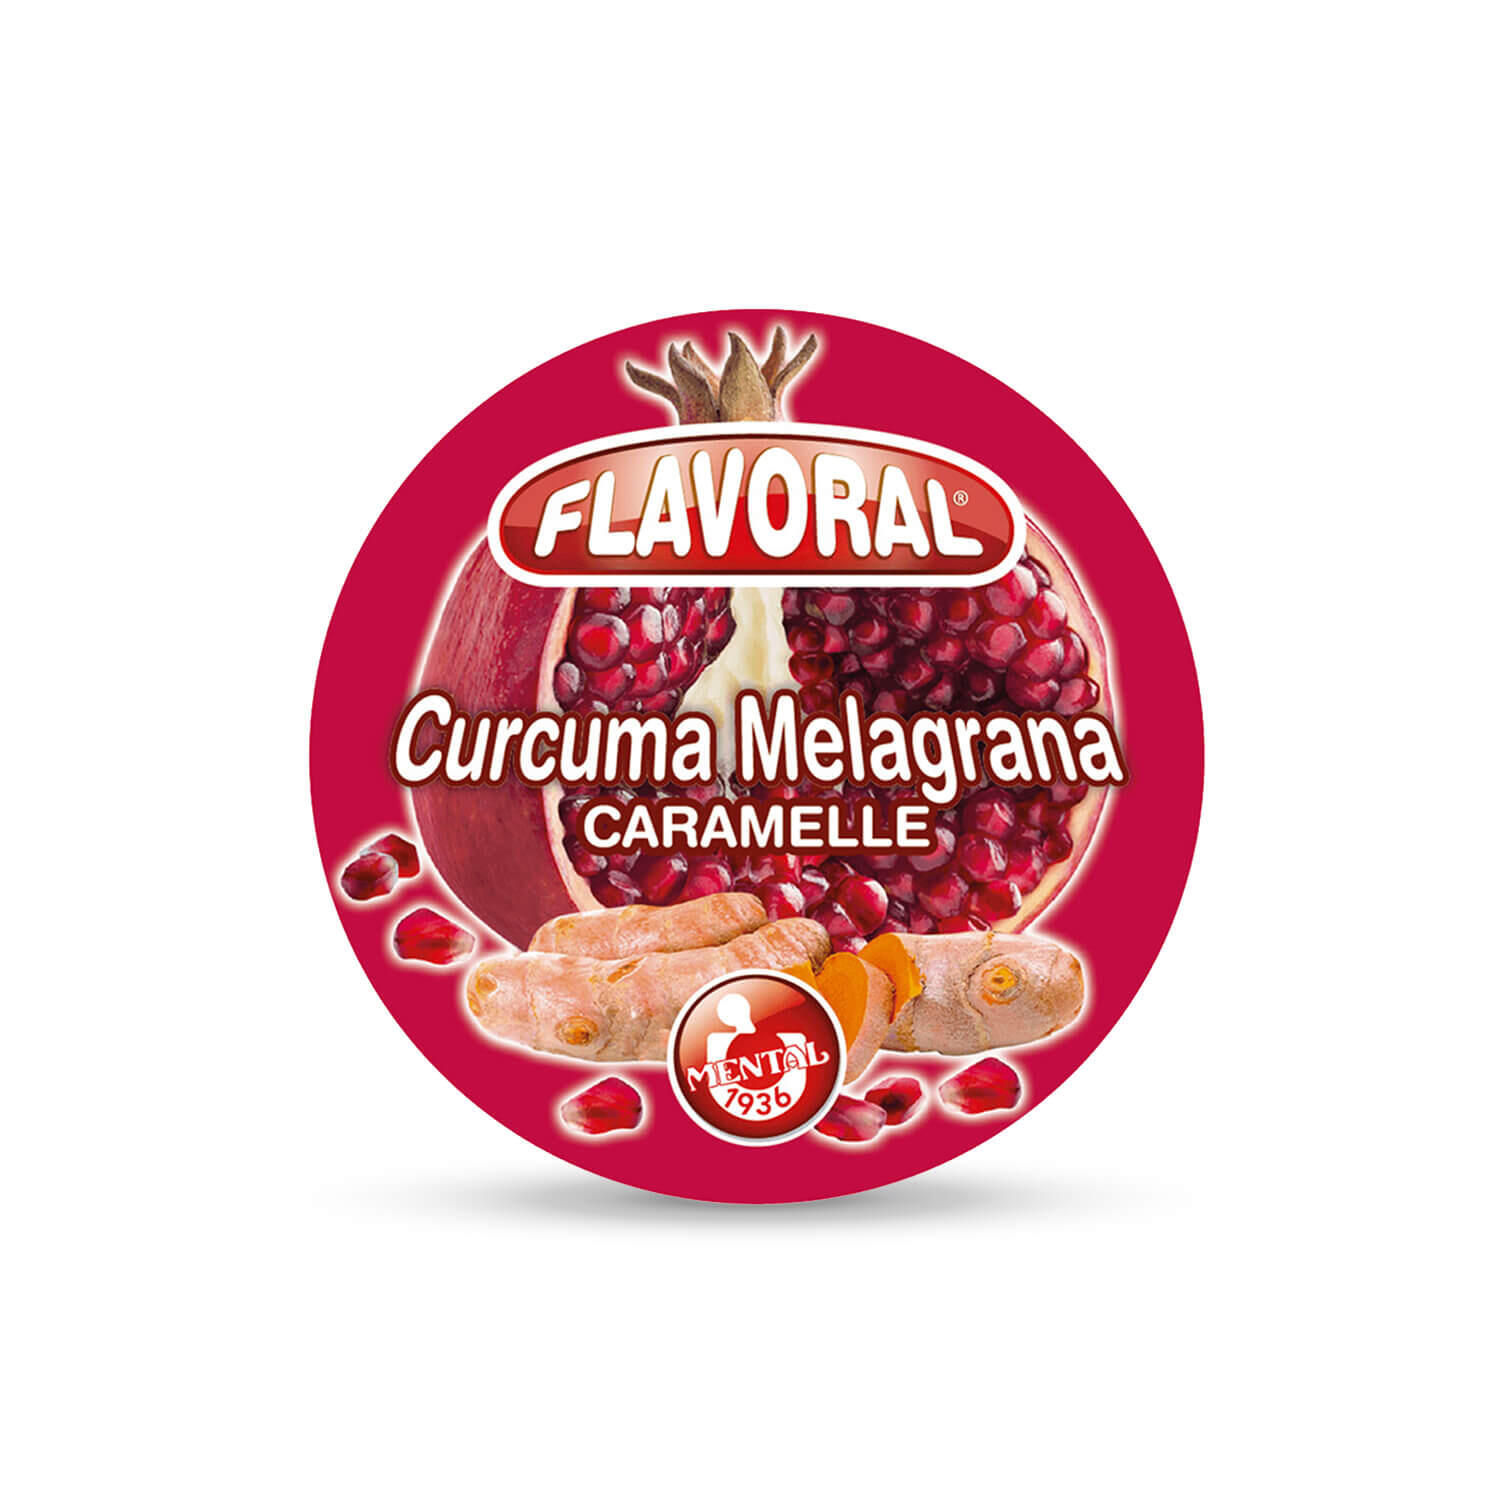 Flavoral Curcuma e Melagrana - Pacchetto Singolo - Flavoral